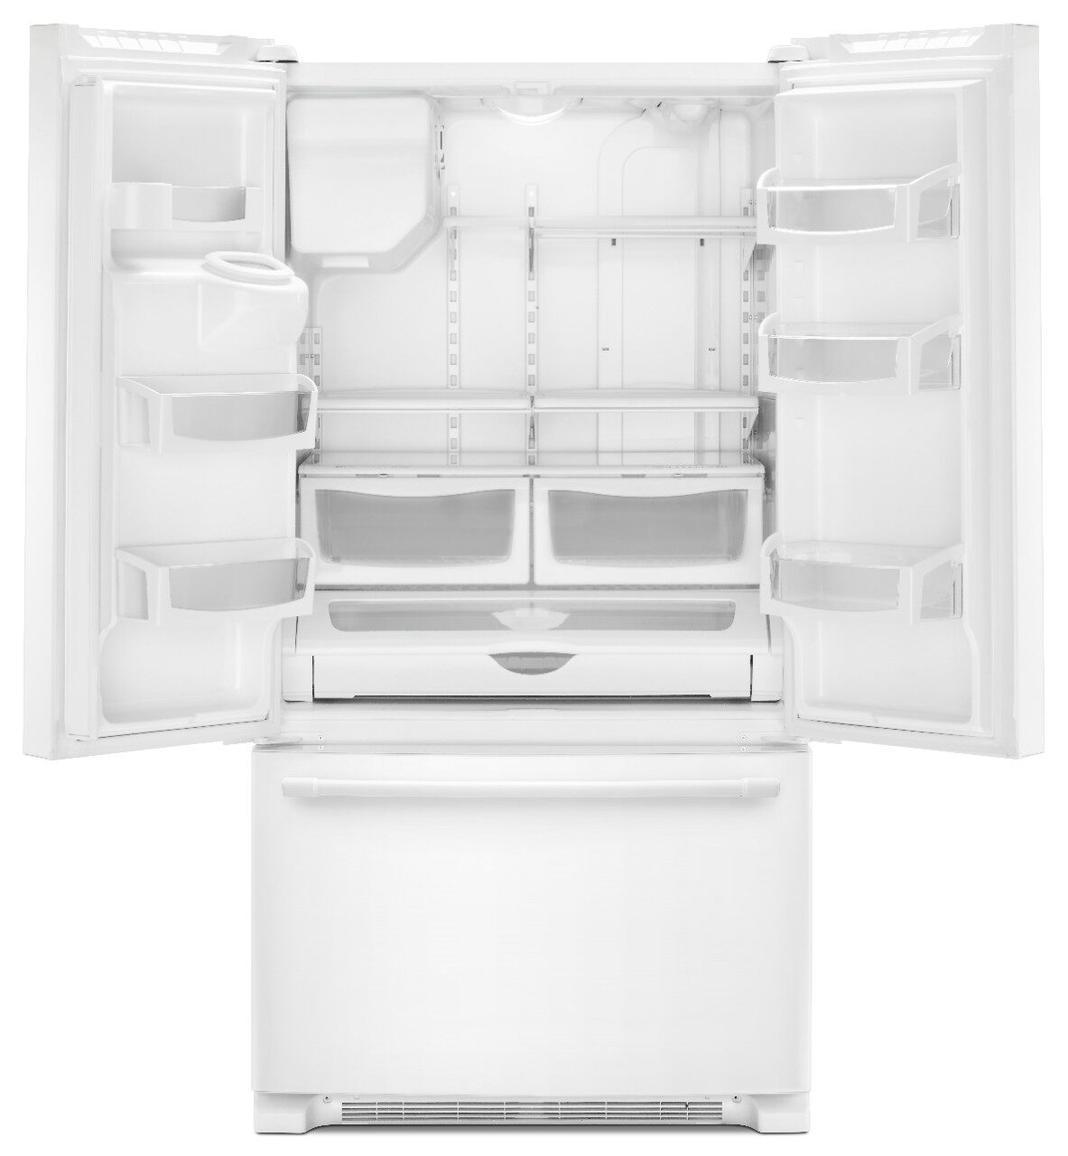 Maytag - 35.625 Inch 24.7 cu. ft French Door Refrigerator in White - MFI2570FEW